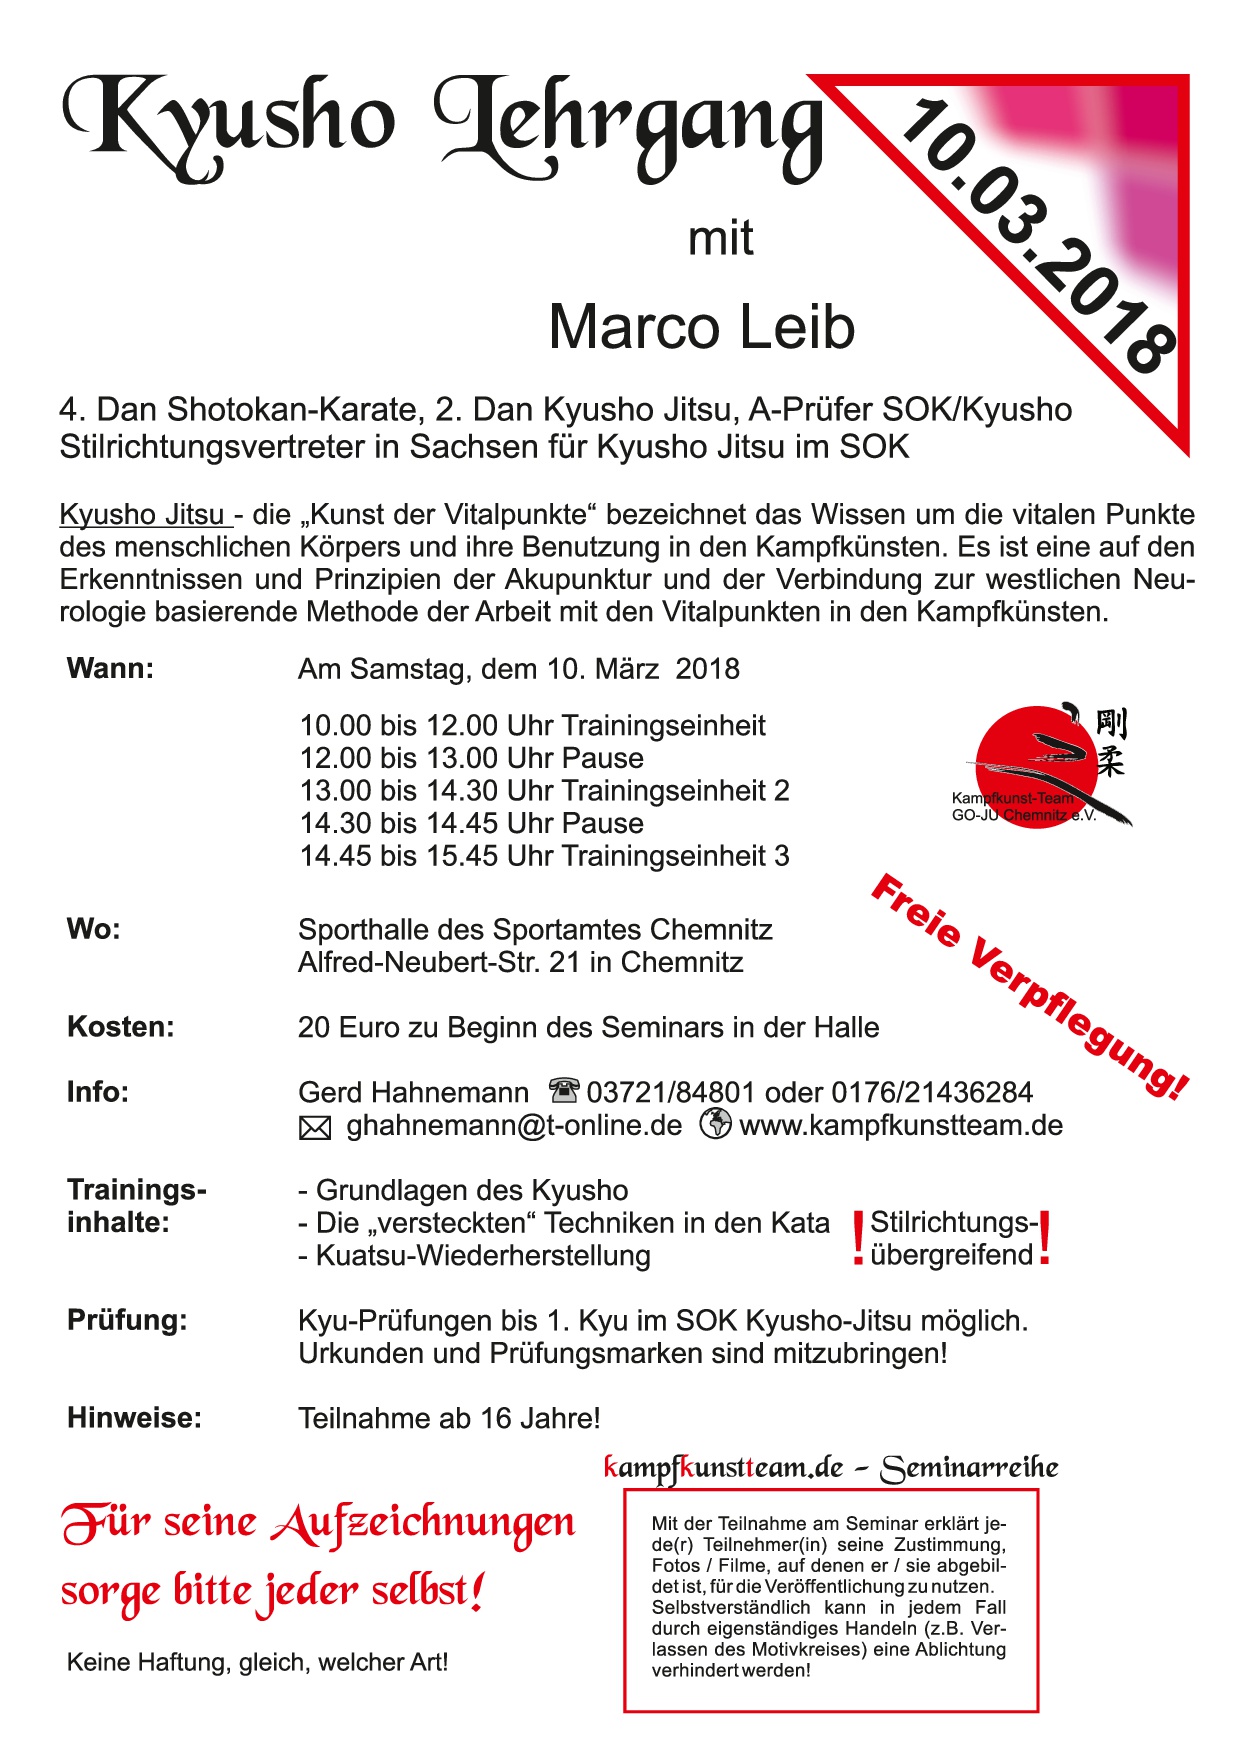 2018 03 10 Seminar1 Marco Leib 2018